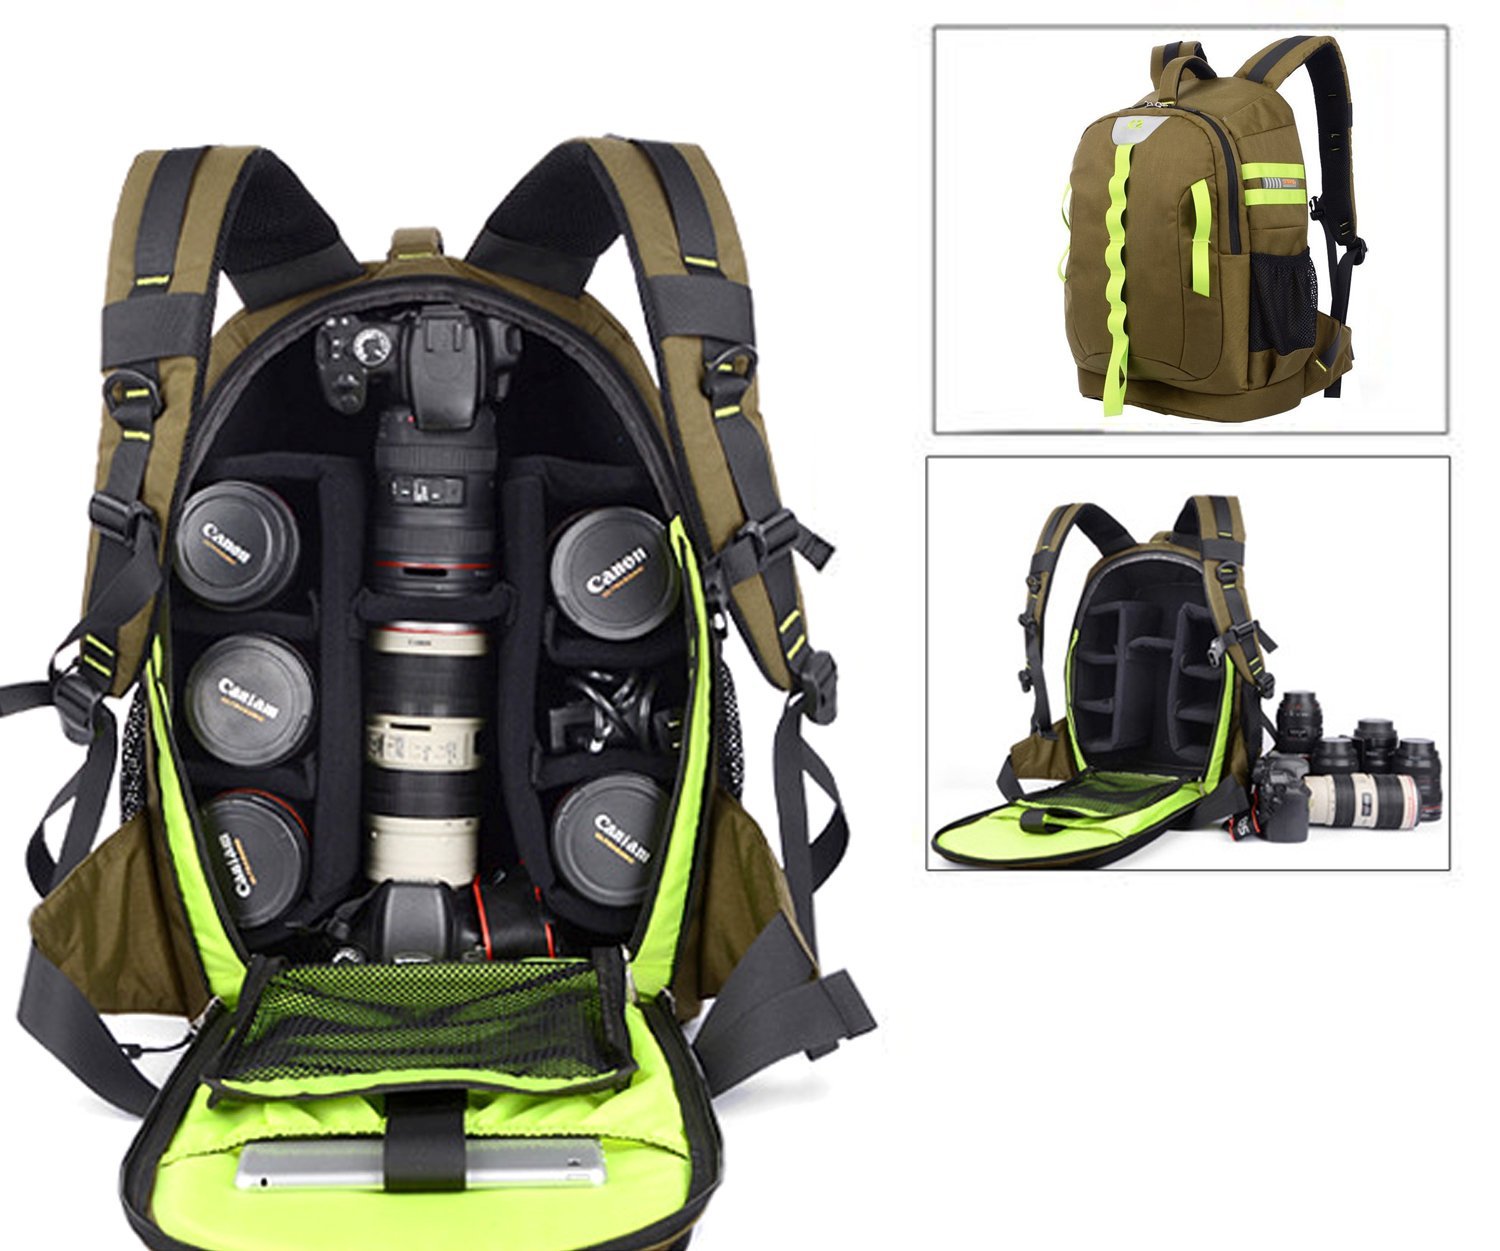 Abonnyc Waterproof Bag, best dslr bag, best dslr camera bag, best dslr camera backpack